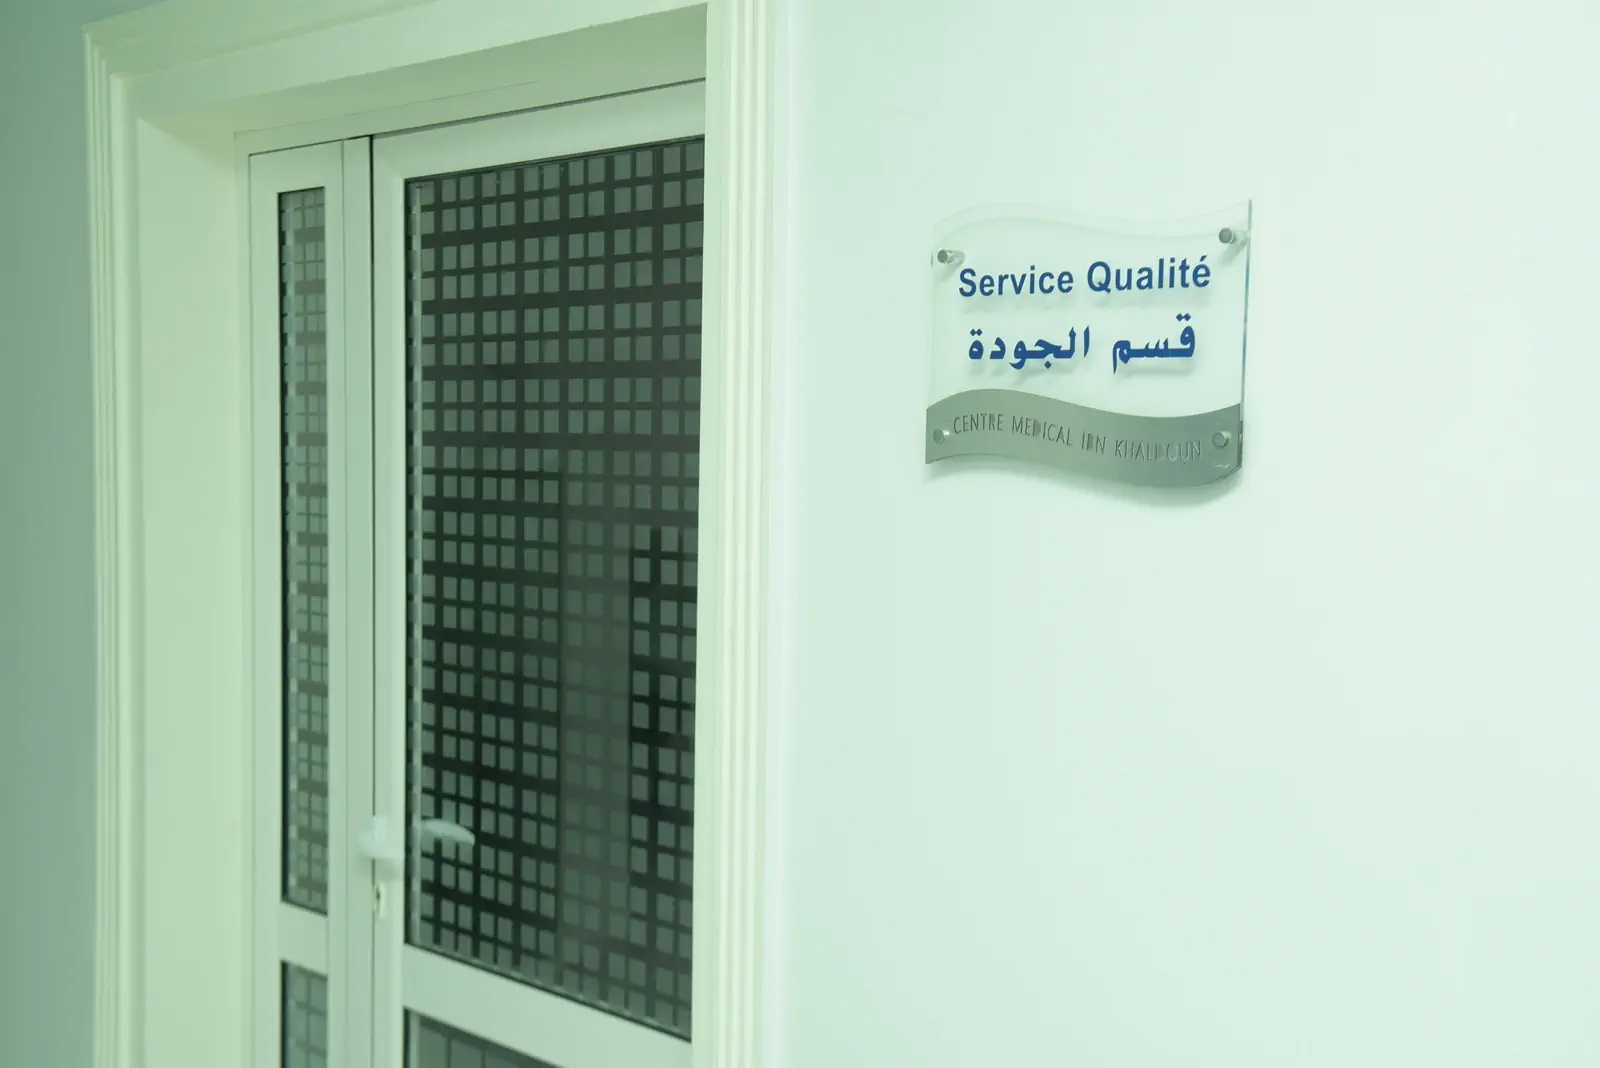 Système qualité Ibn Khaldoun medical center Sousse Tunisia